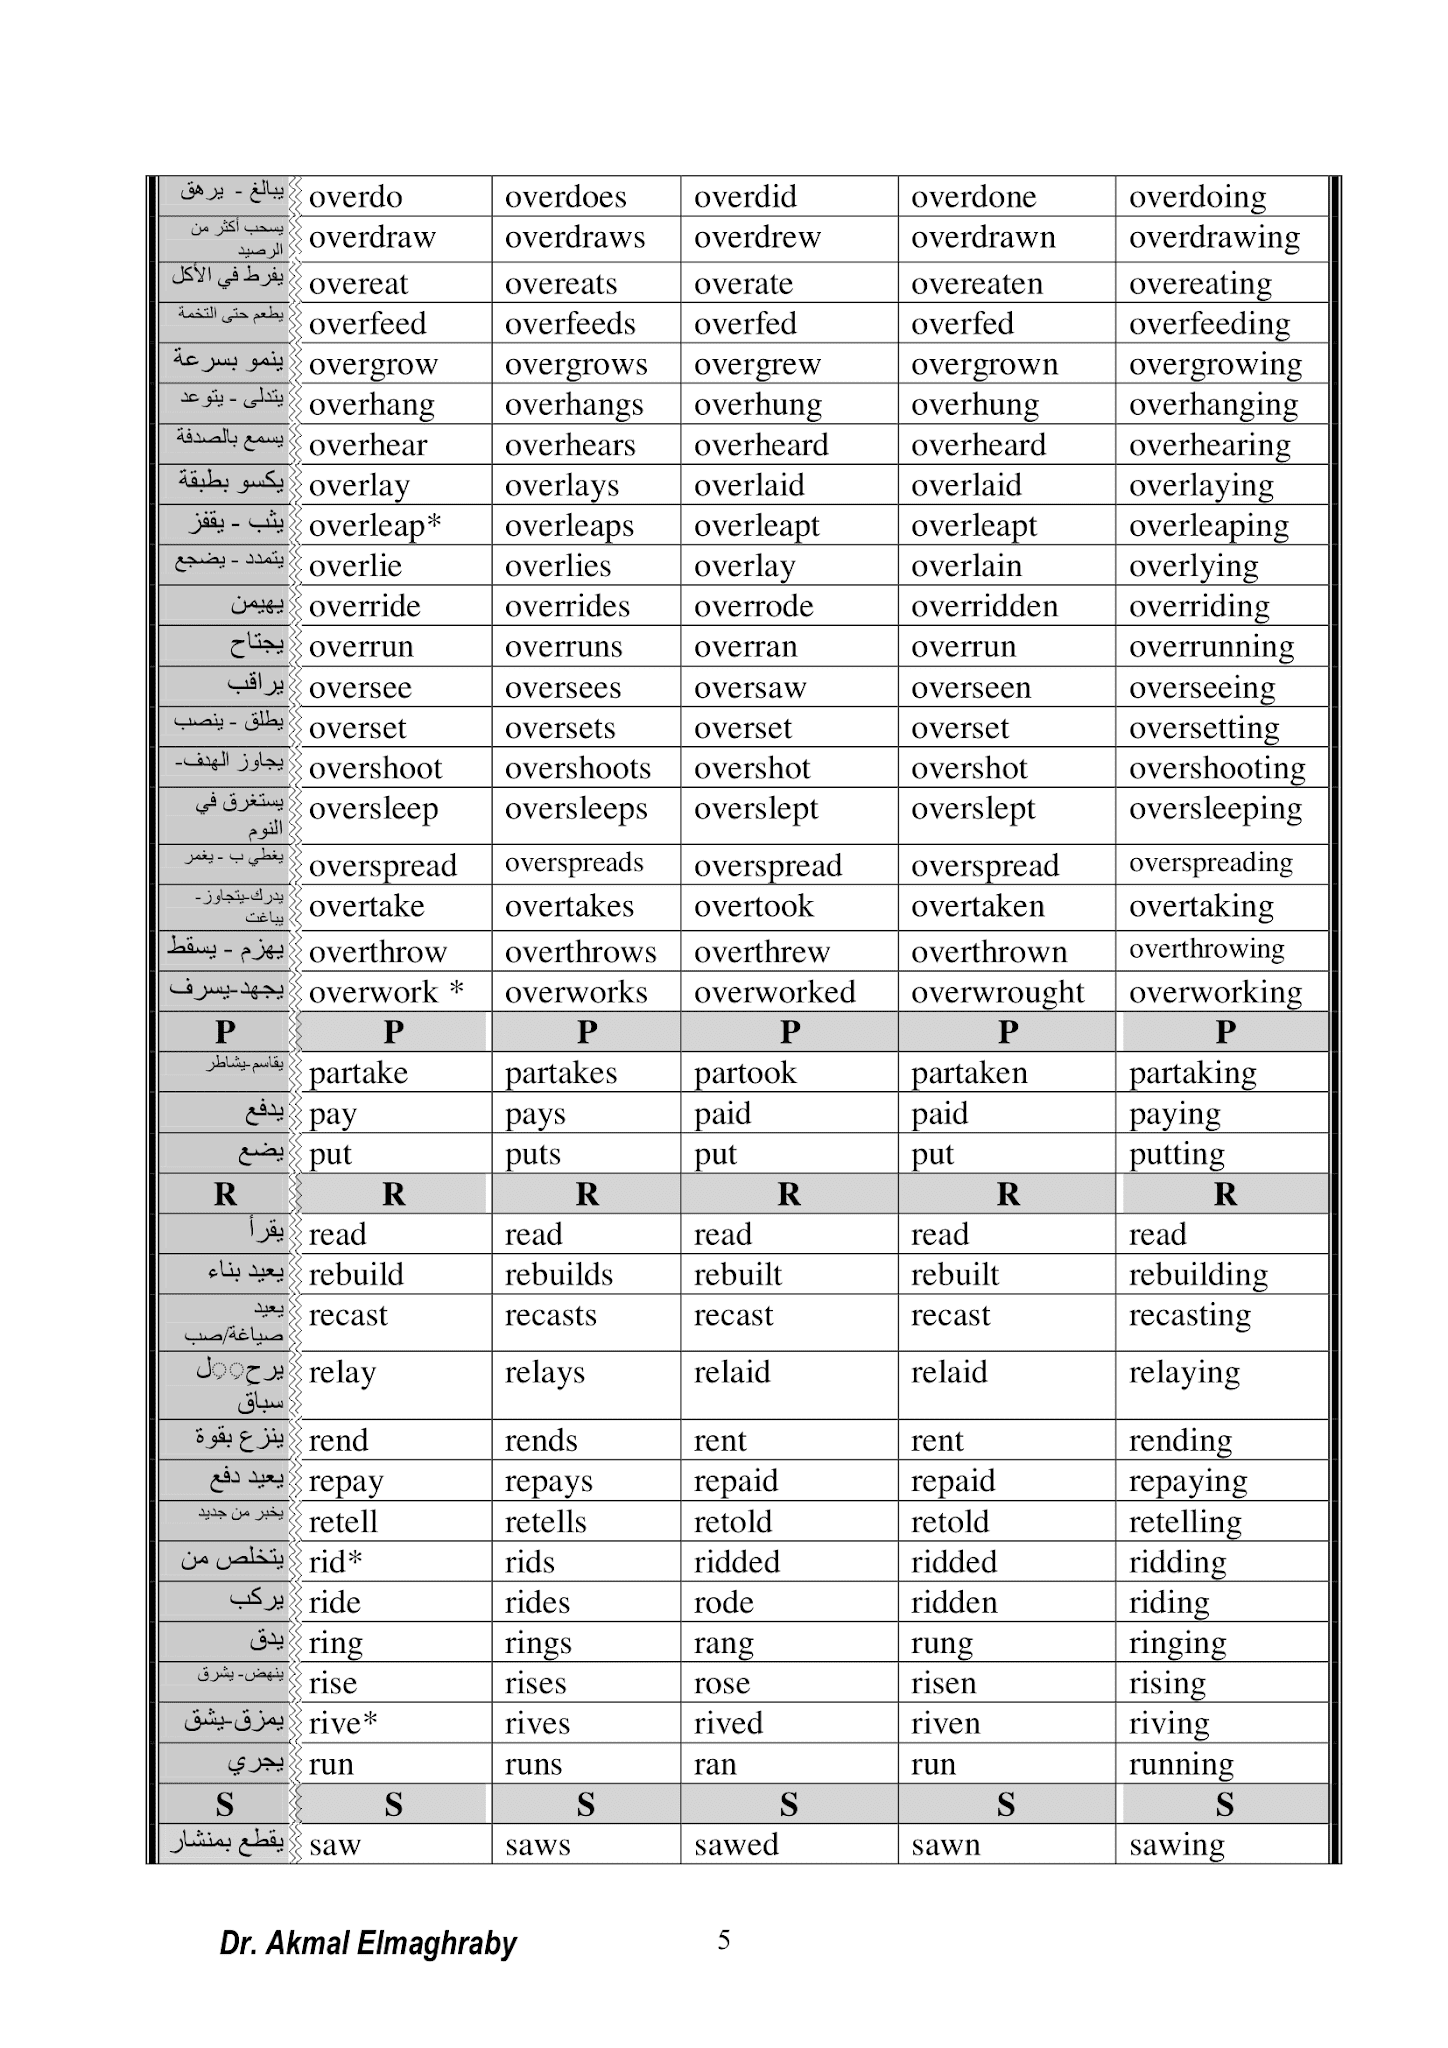 بالصور جدول تصريف الأفعال الشاذة في اللغة الانجيليزية مع الترجمة للعربية